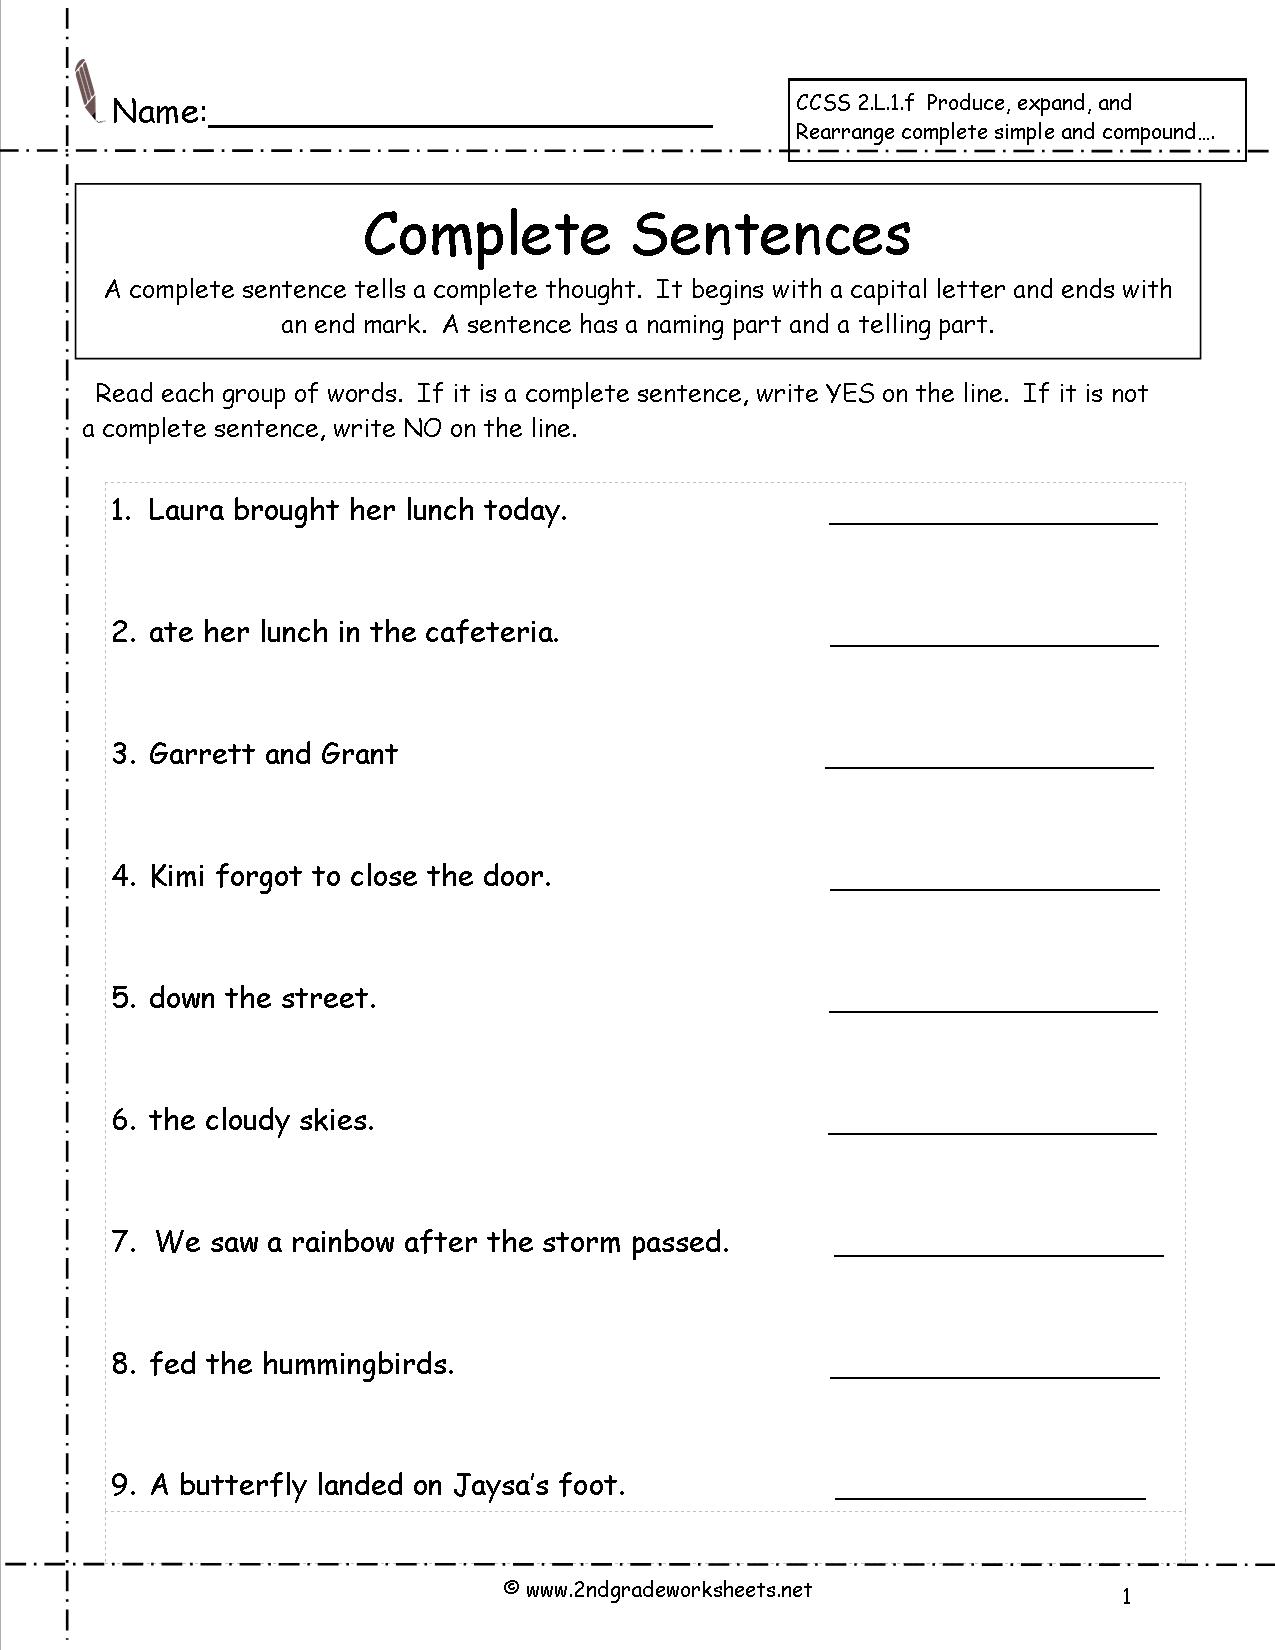 Printables Simple Sentence Worksheet second grade sentences worksheets ccss 2 l 1 f complete worksheets